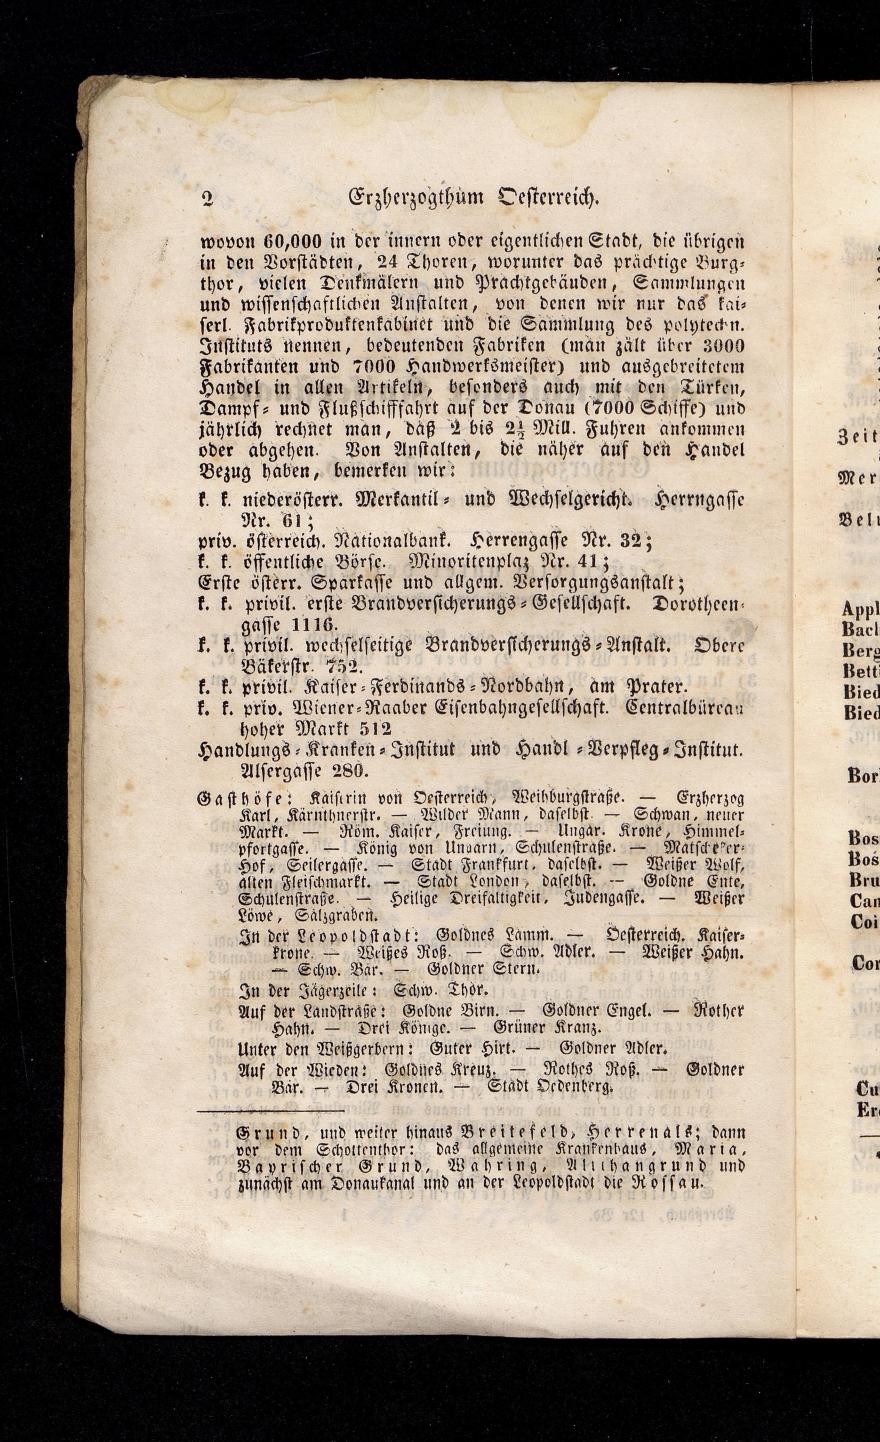 Grosses Adressbuch der Kaufleute. No. 13. Oesterreich ober u. unter der Enns 1844 - Seite 6